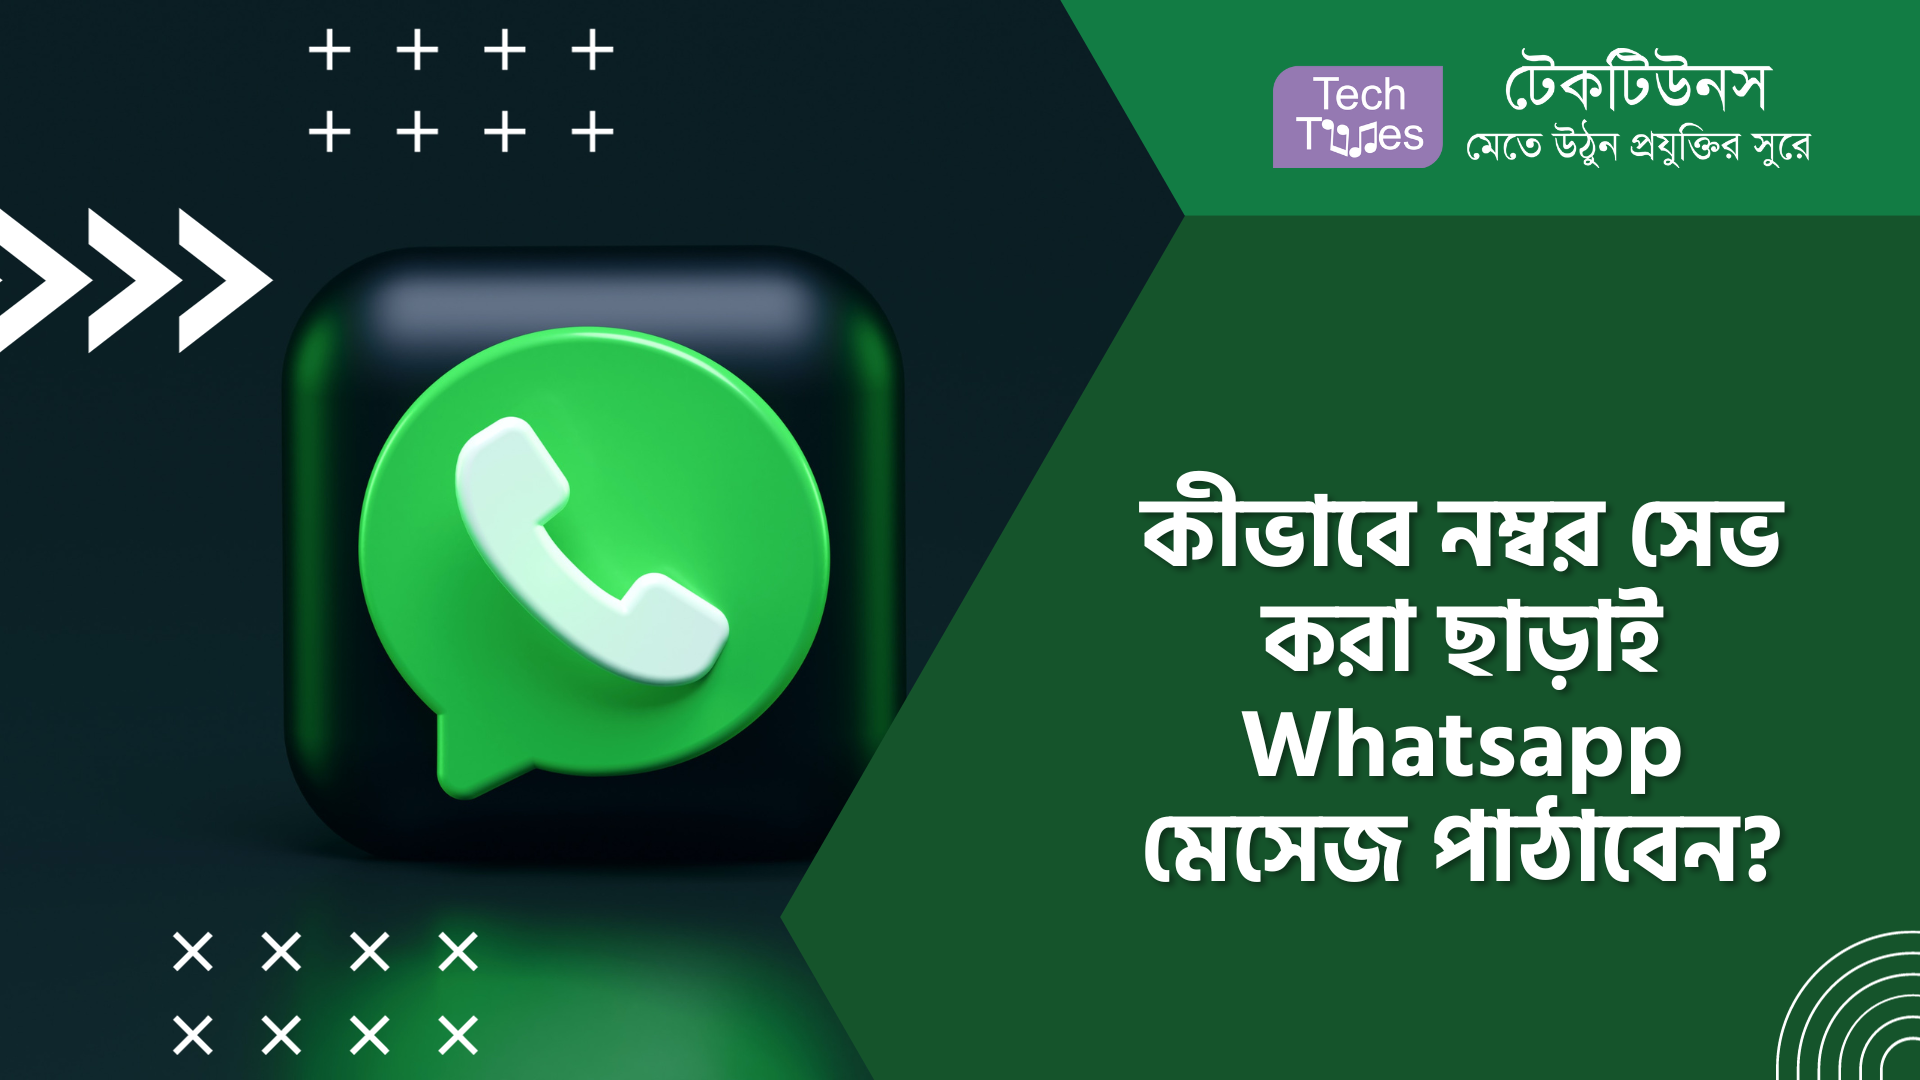 কীভাবে নম্বর সেভ করা ছাড়াই Whatsapp মেসেজ পাঠাবেন? | Techtunes